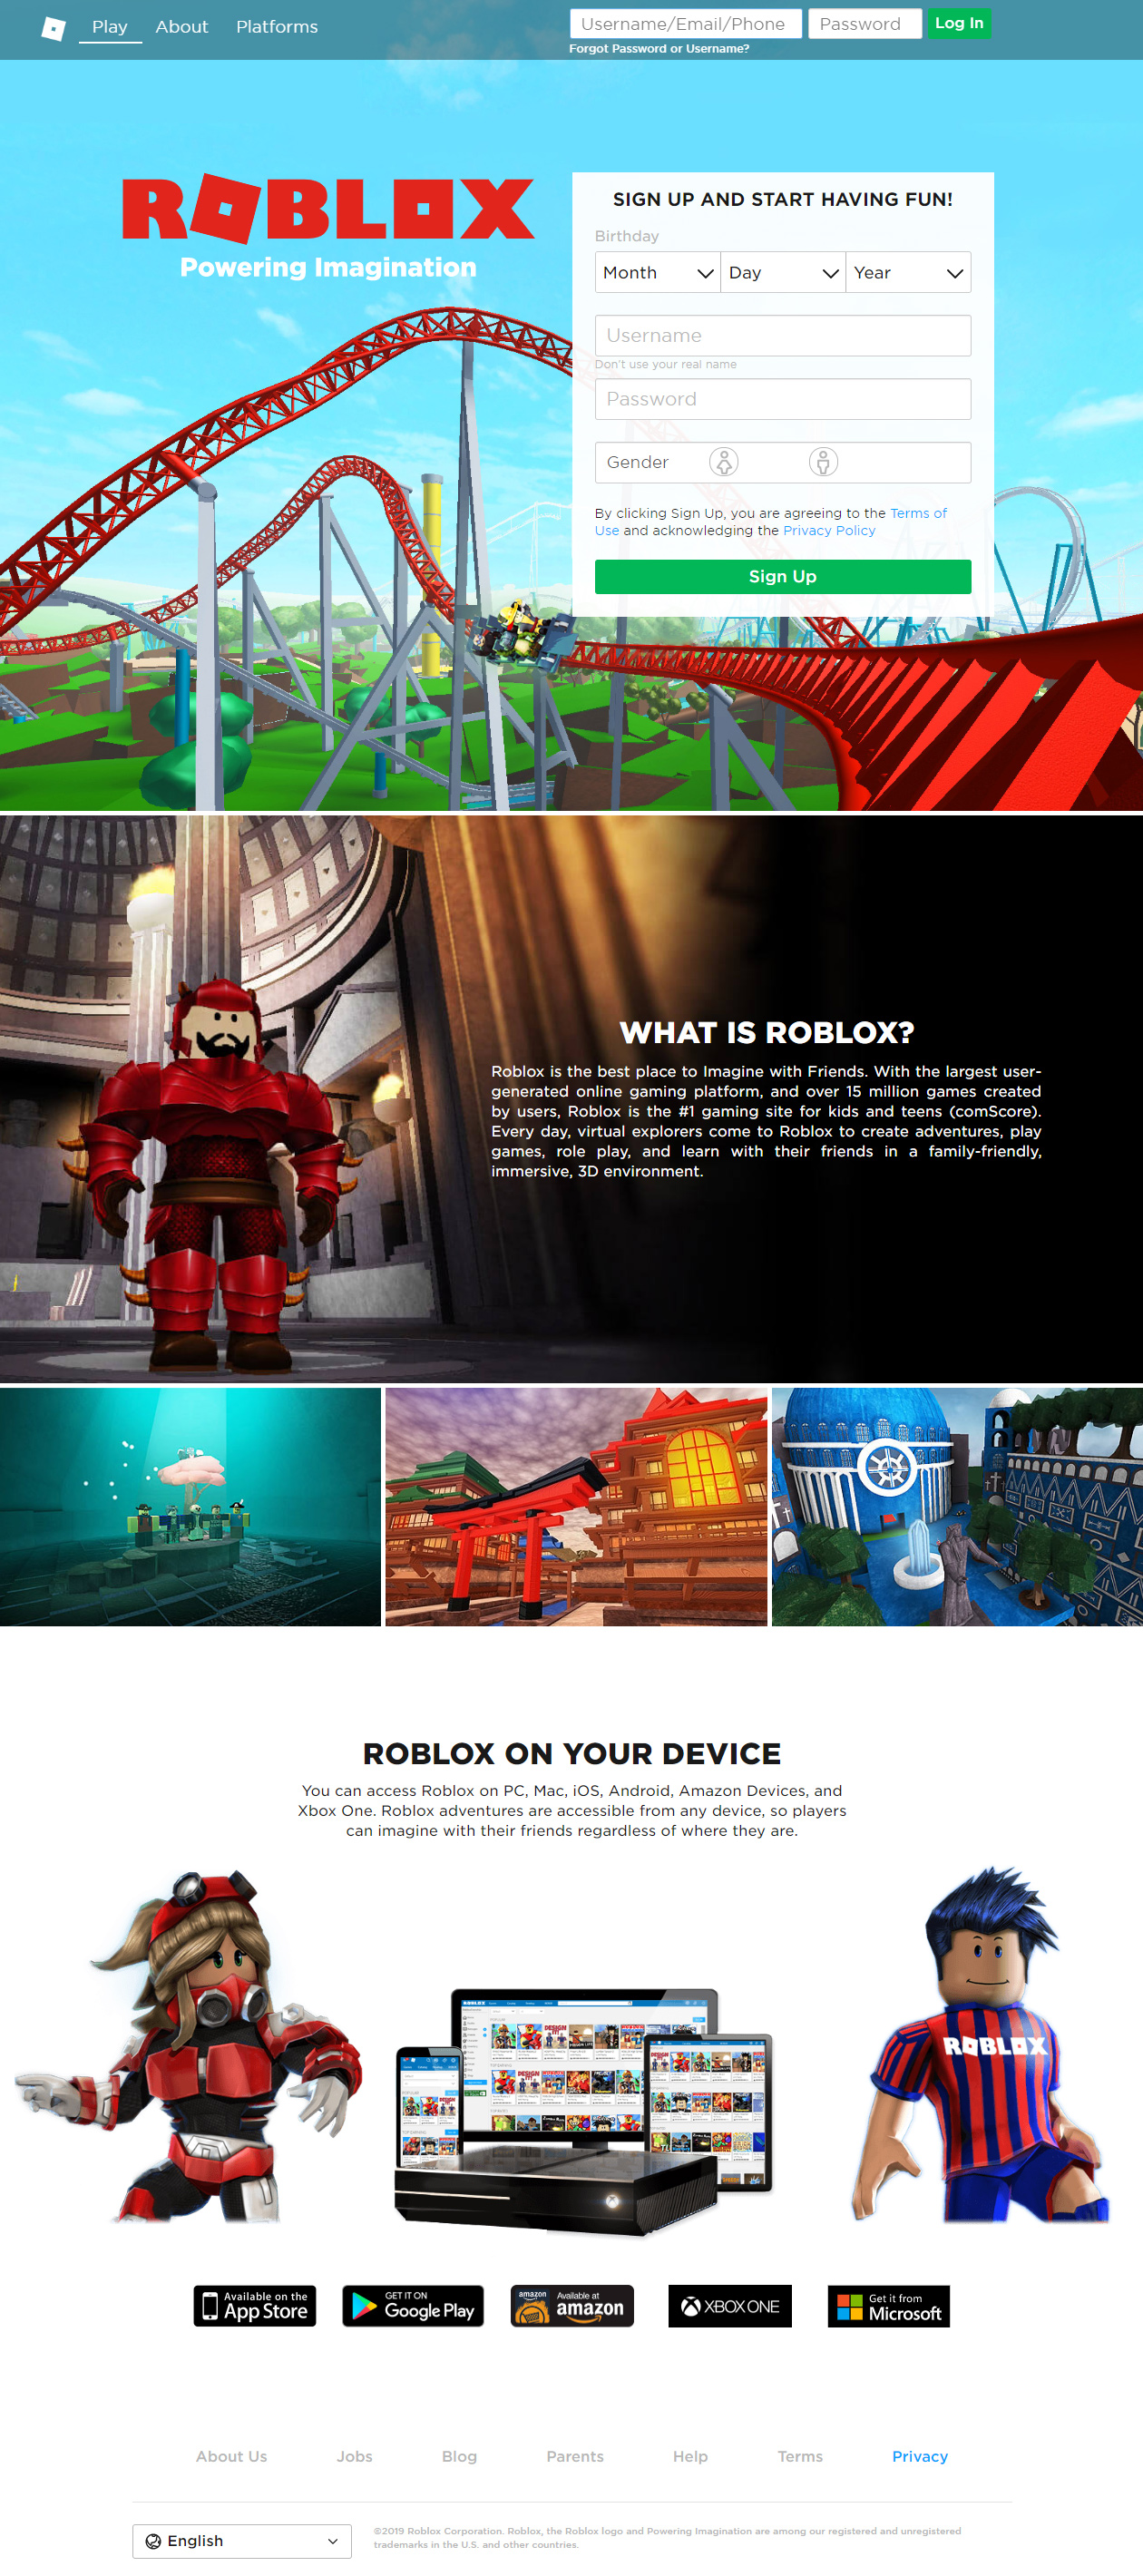 Roblox website in 2019